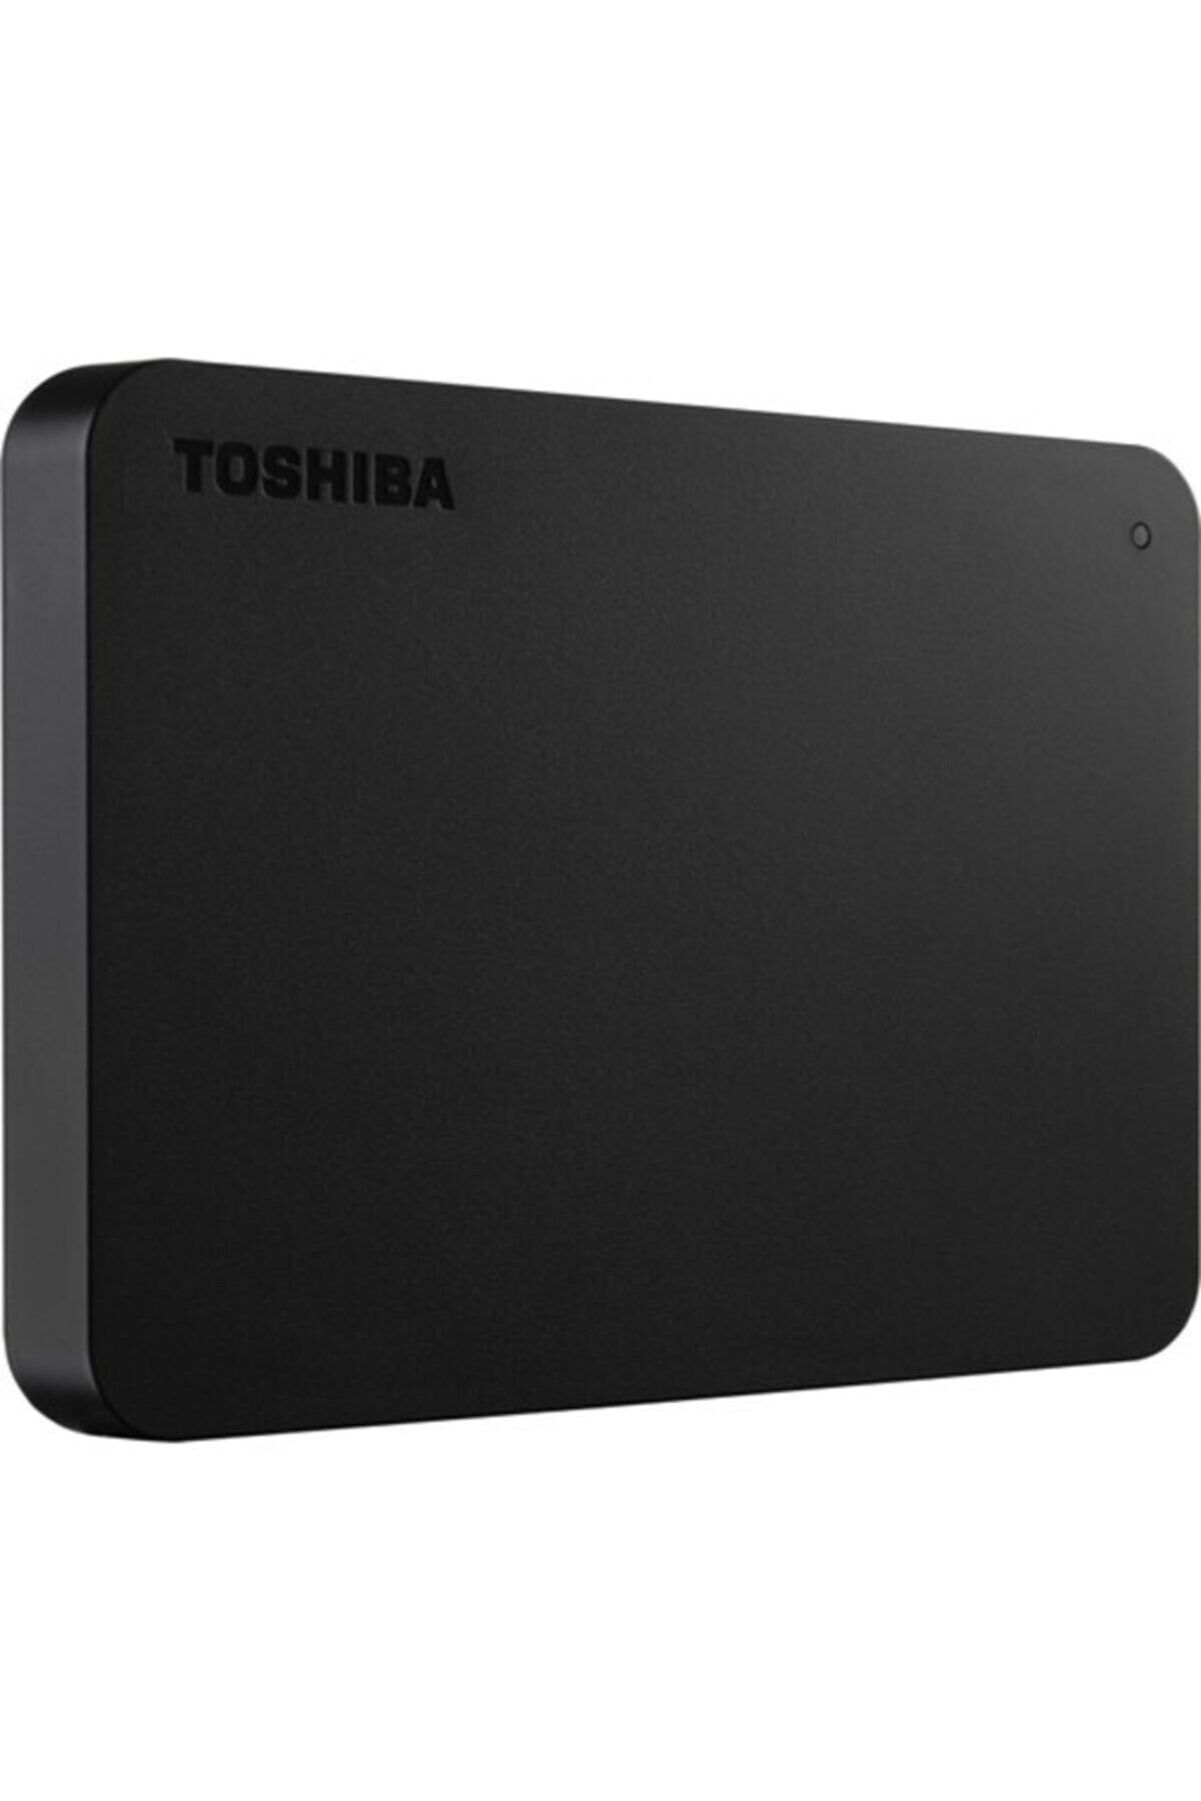 Toshiba Canvio Basic 1 TB HDTB410EK3AA 2.5 Inç Usb 3.0 Taşınabilir Disk